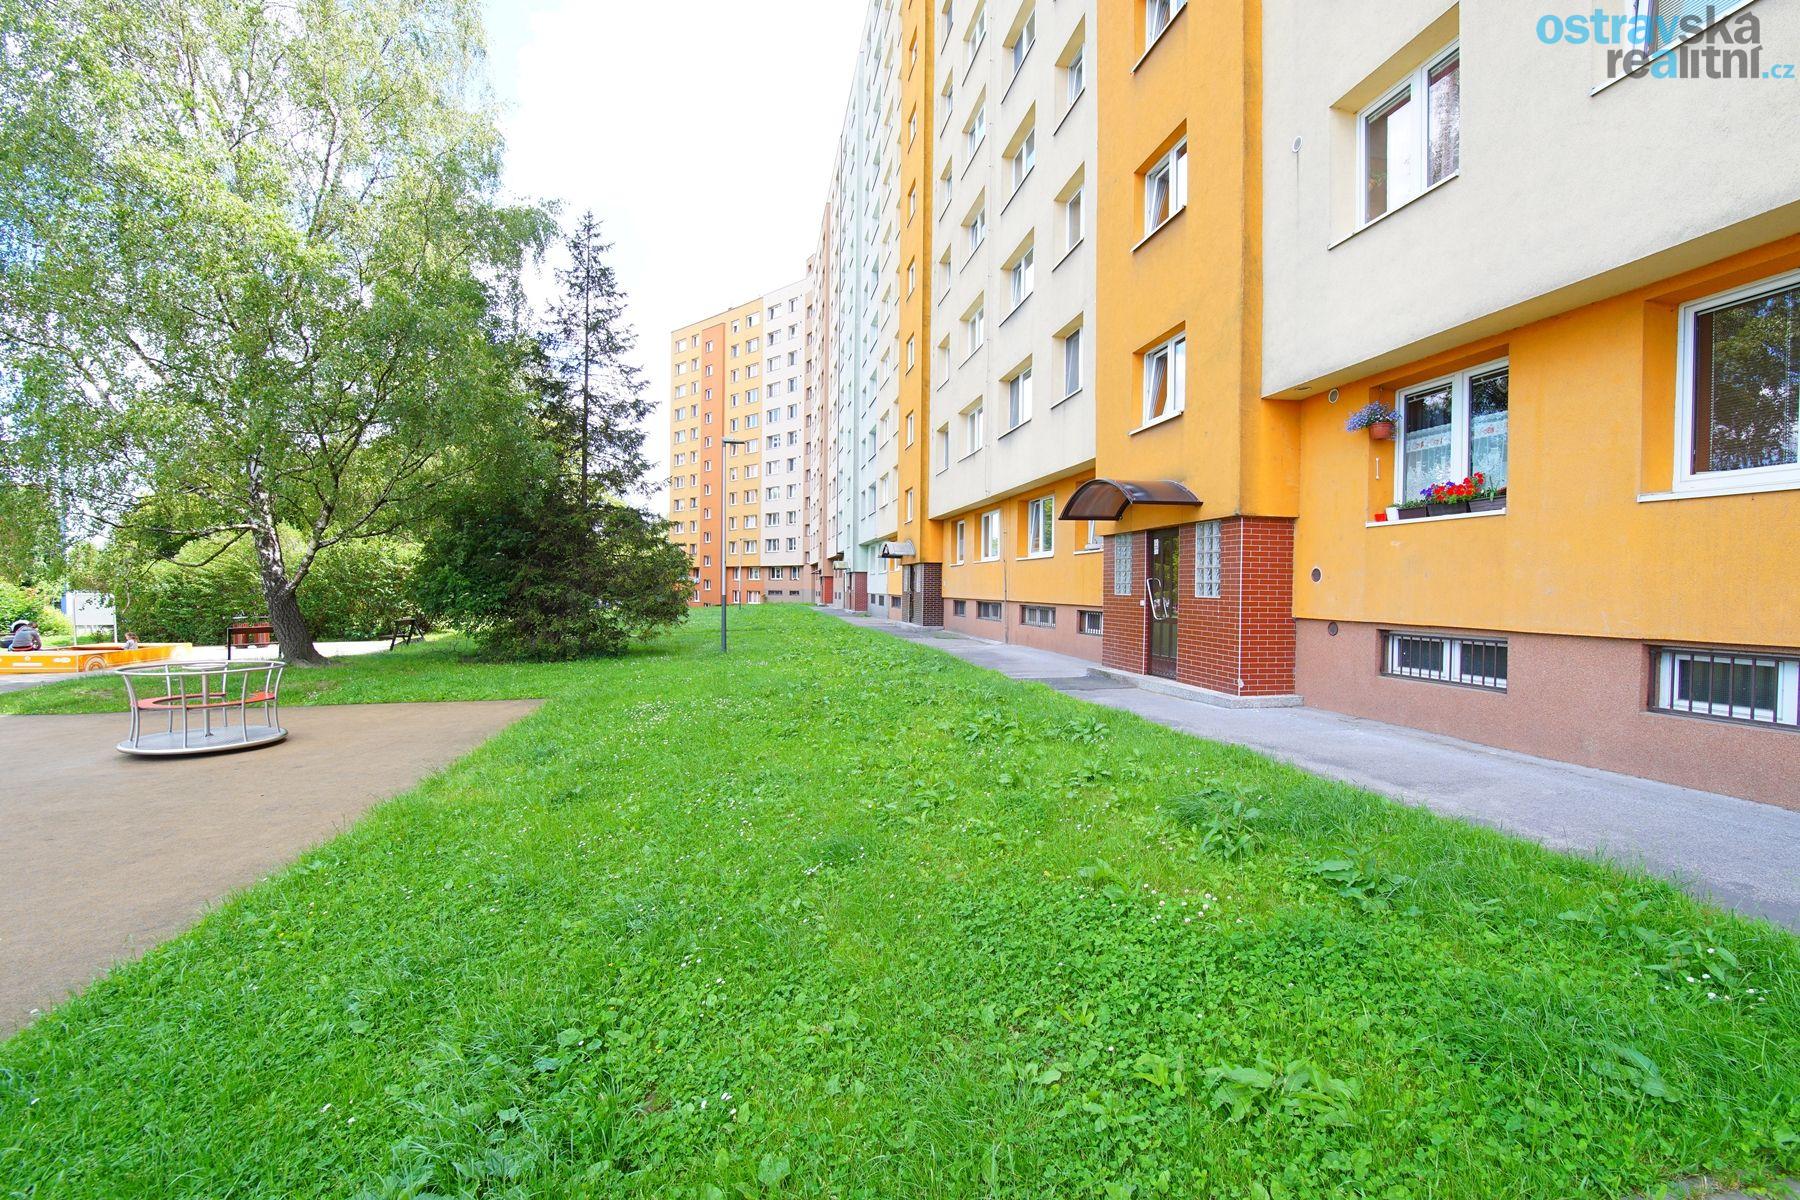 Prodej, byt 3+1, Ostrava - Výškovice, ul. Srbská, 75 m2, 2 x balkón